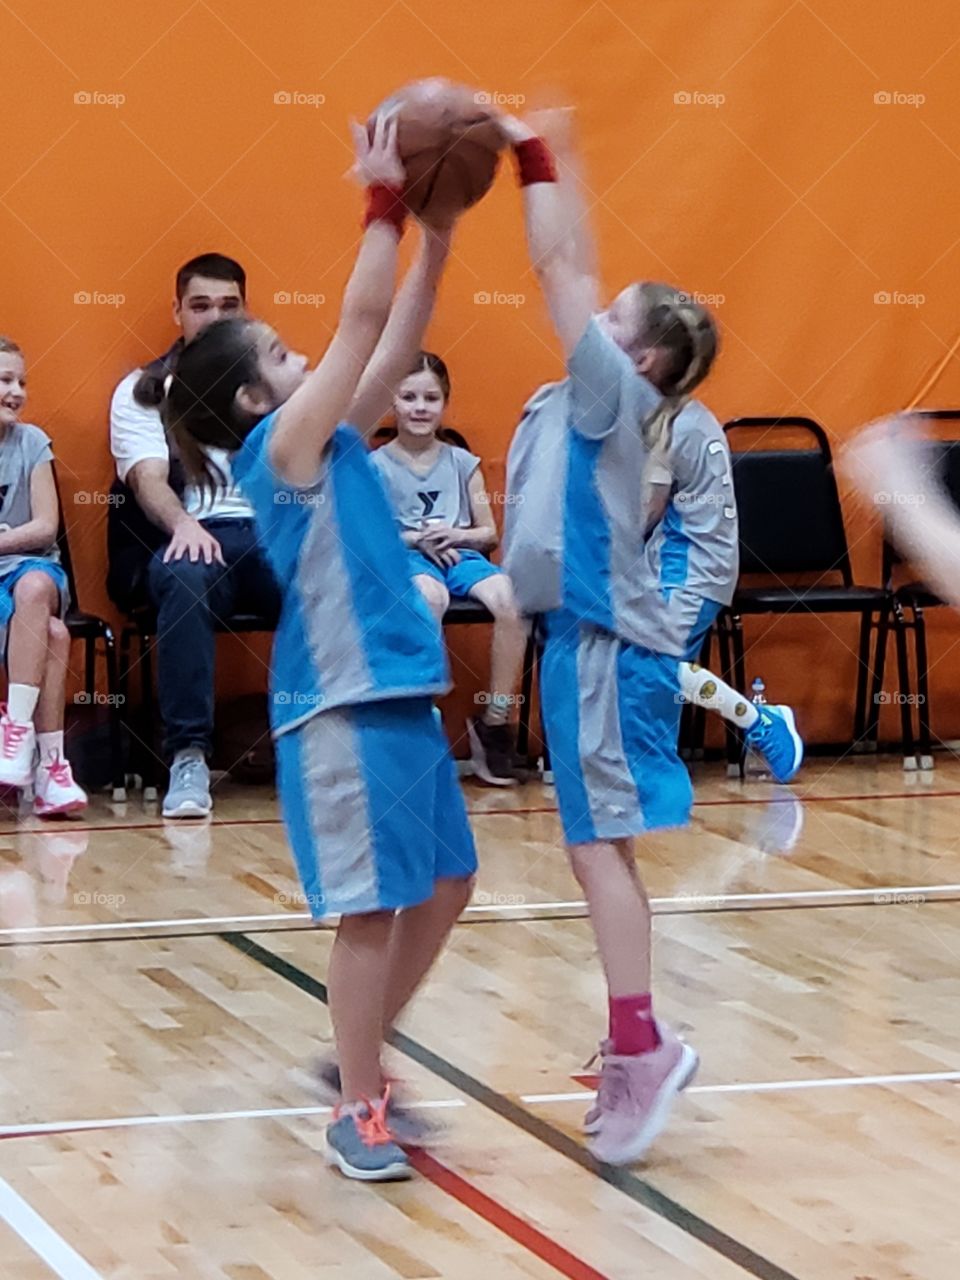 shooting a basket playing basketball